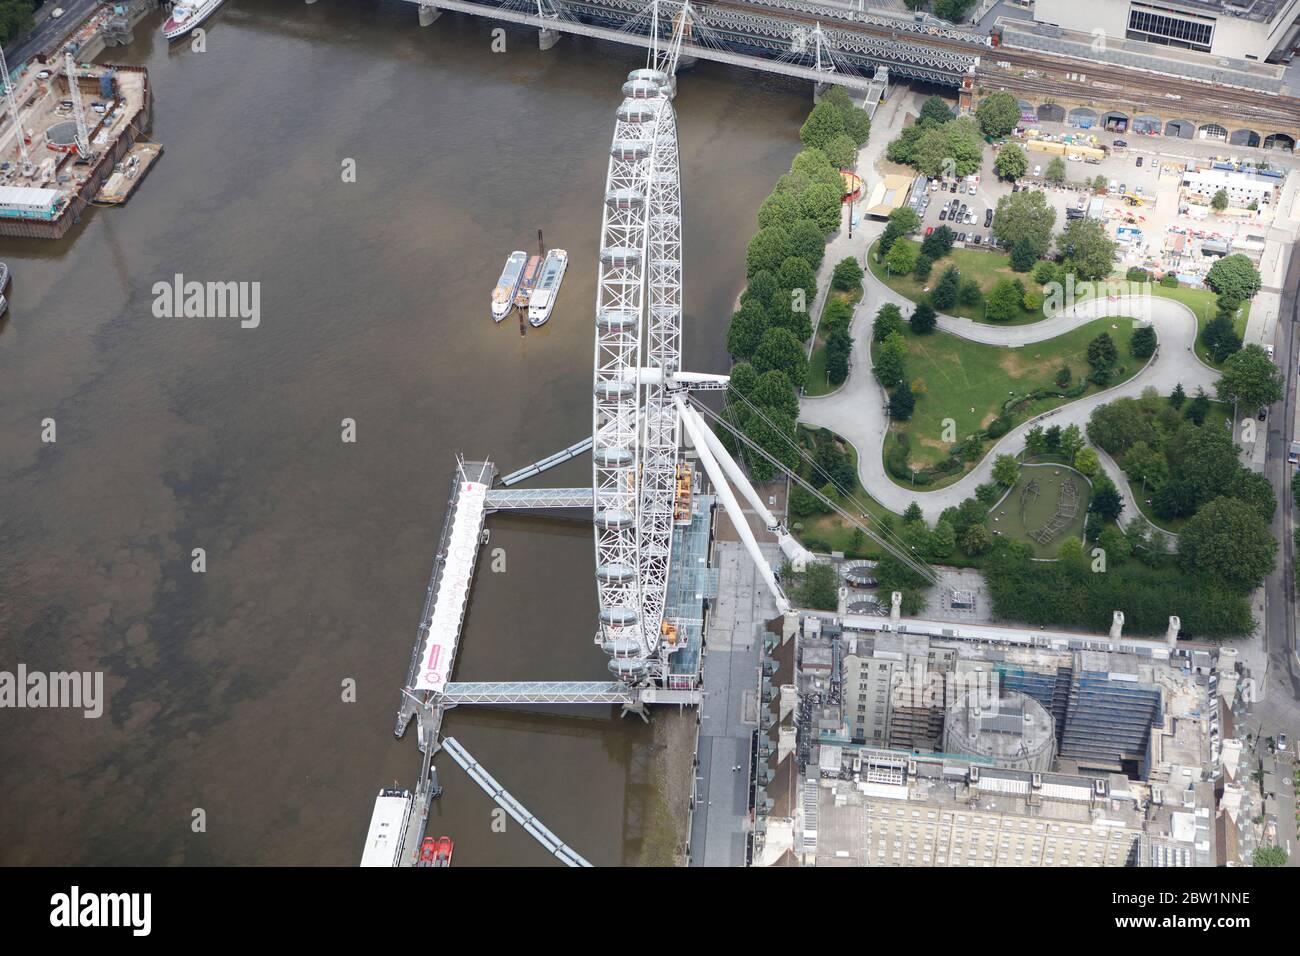 Vista aerea del London Eye e dei Jubilee Gardens, Londra, Regno Unito Foto Stock